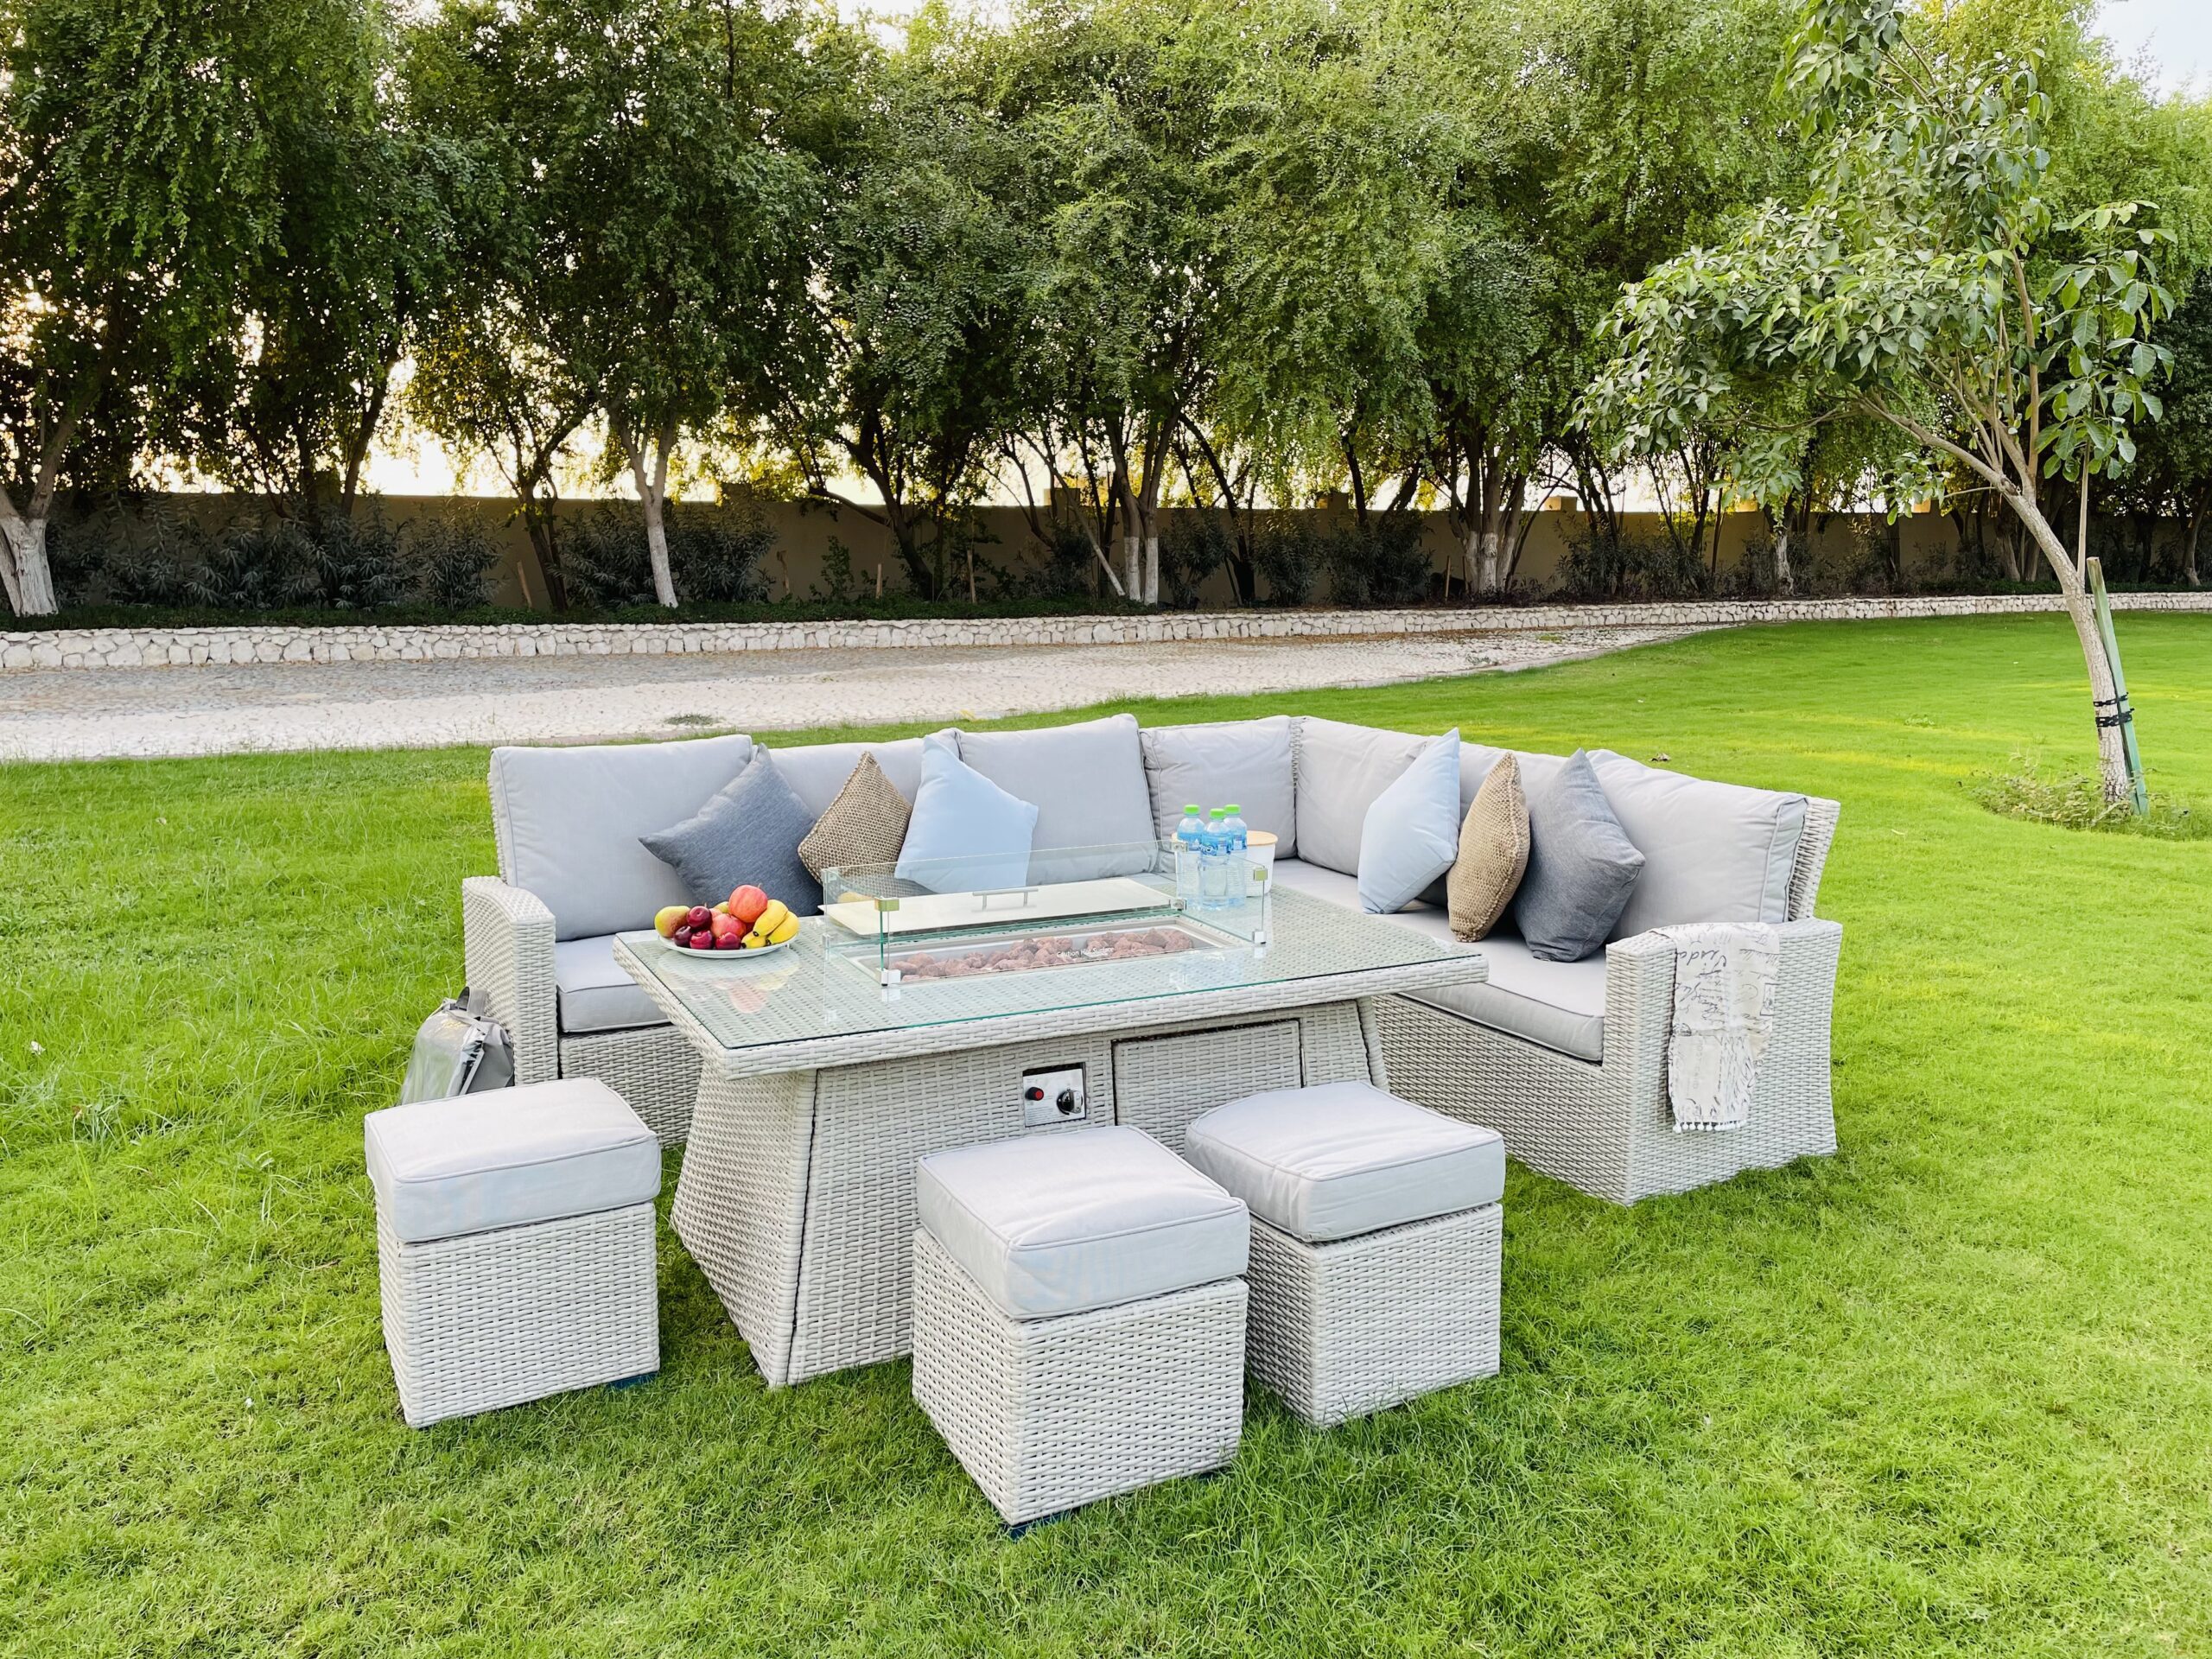 Outdoor Furniture Qatar